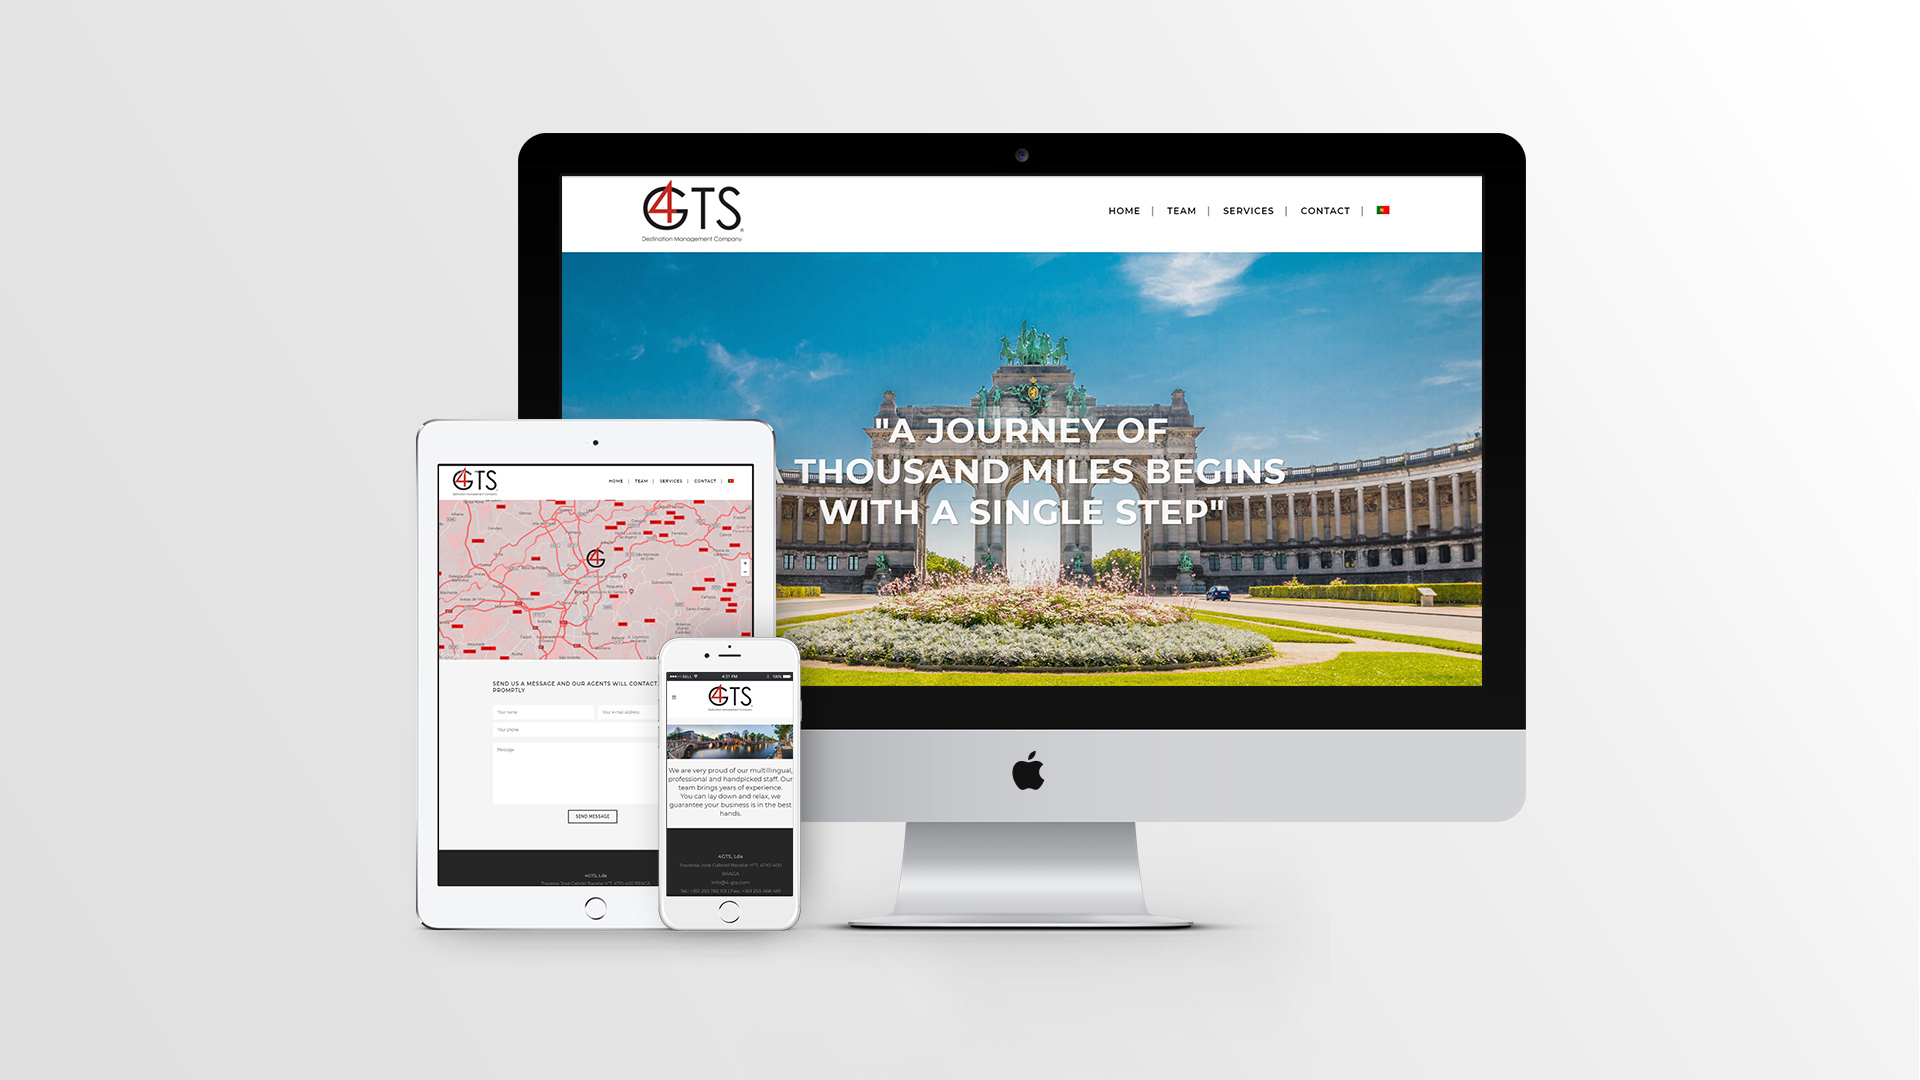 4GTS-web design-marketing digital-publicidade-viagens